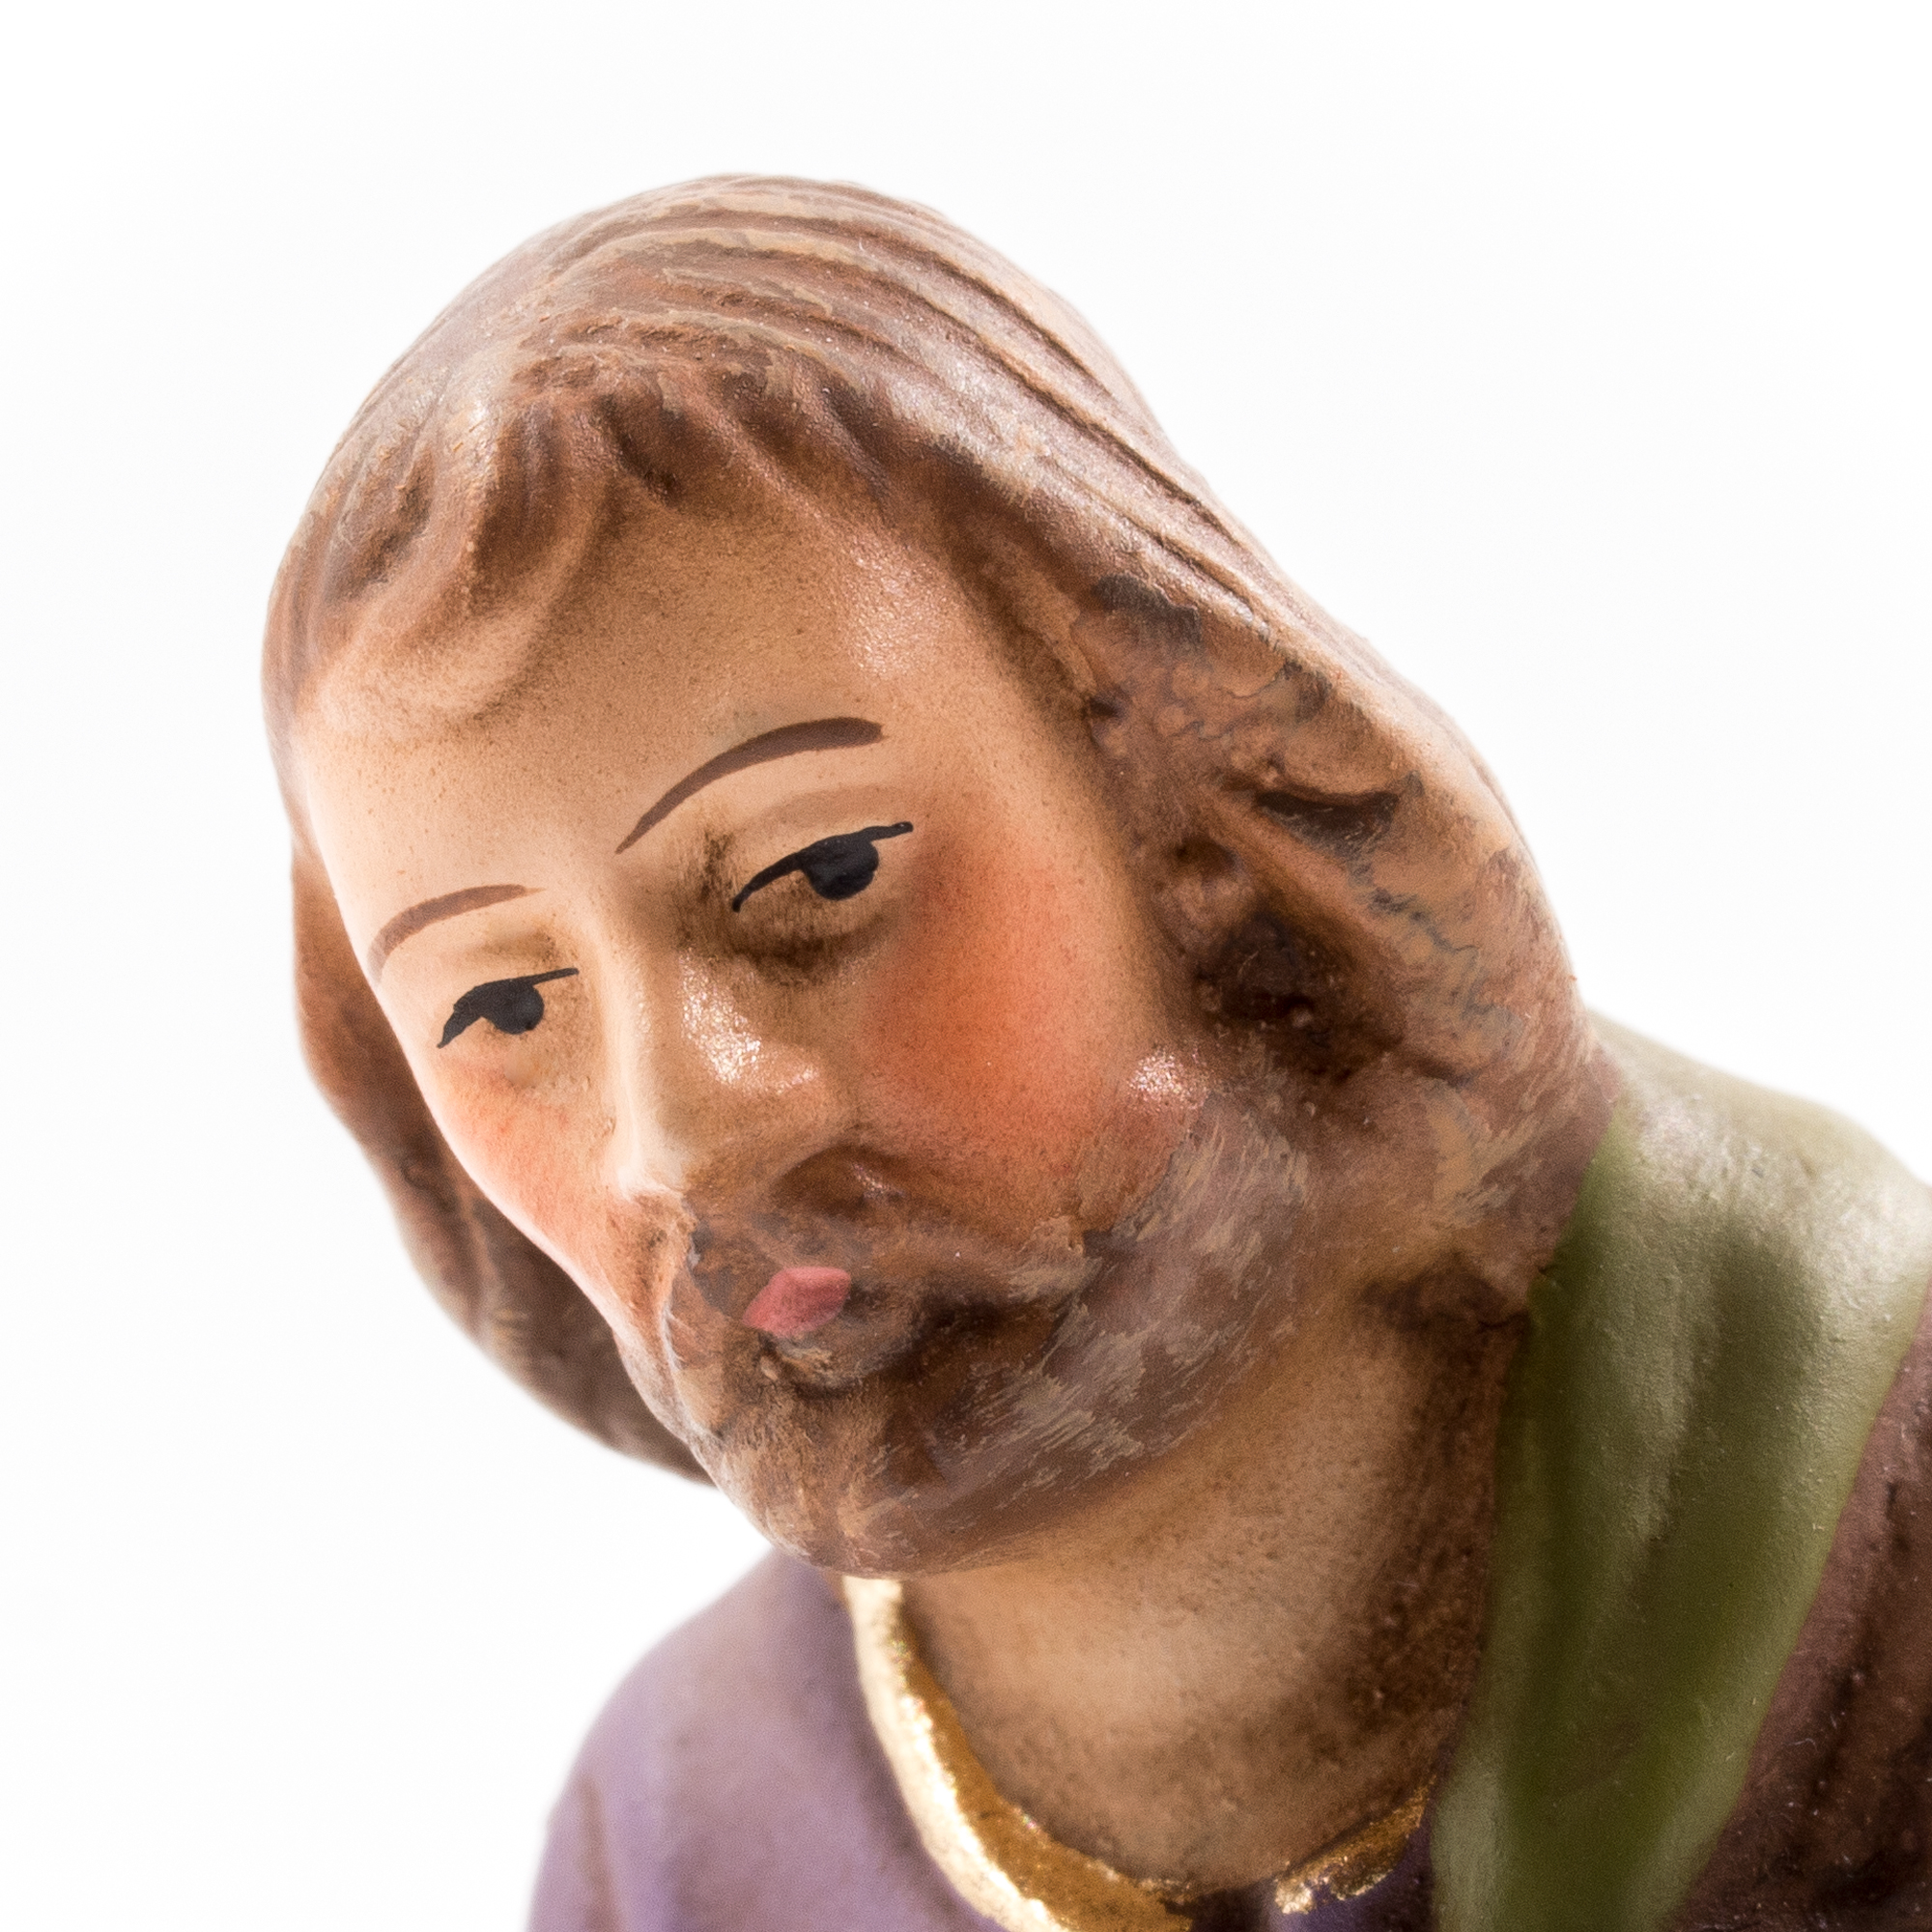 Josef stehend mit Laterne, zu 10cm Krippenfiguren - Original MAROLIN® - Krippenfigur für Ihre Weihnachtskrippe - Made in Germany